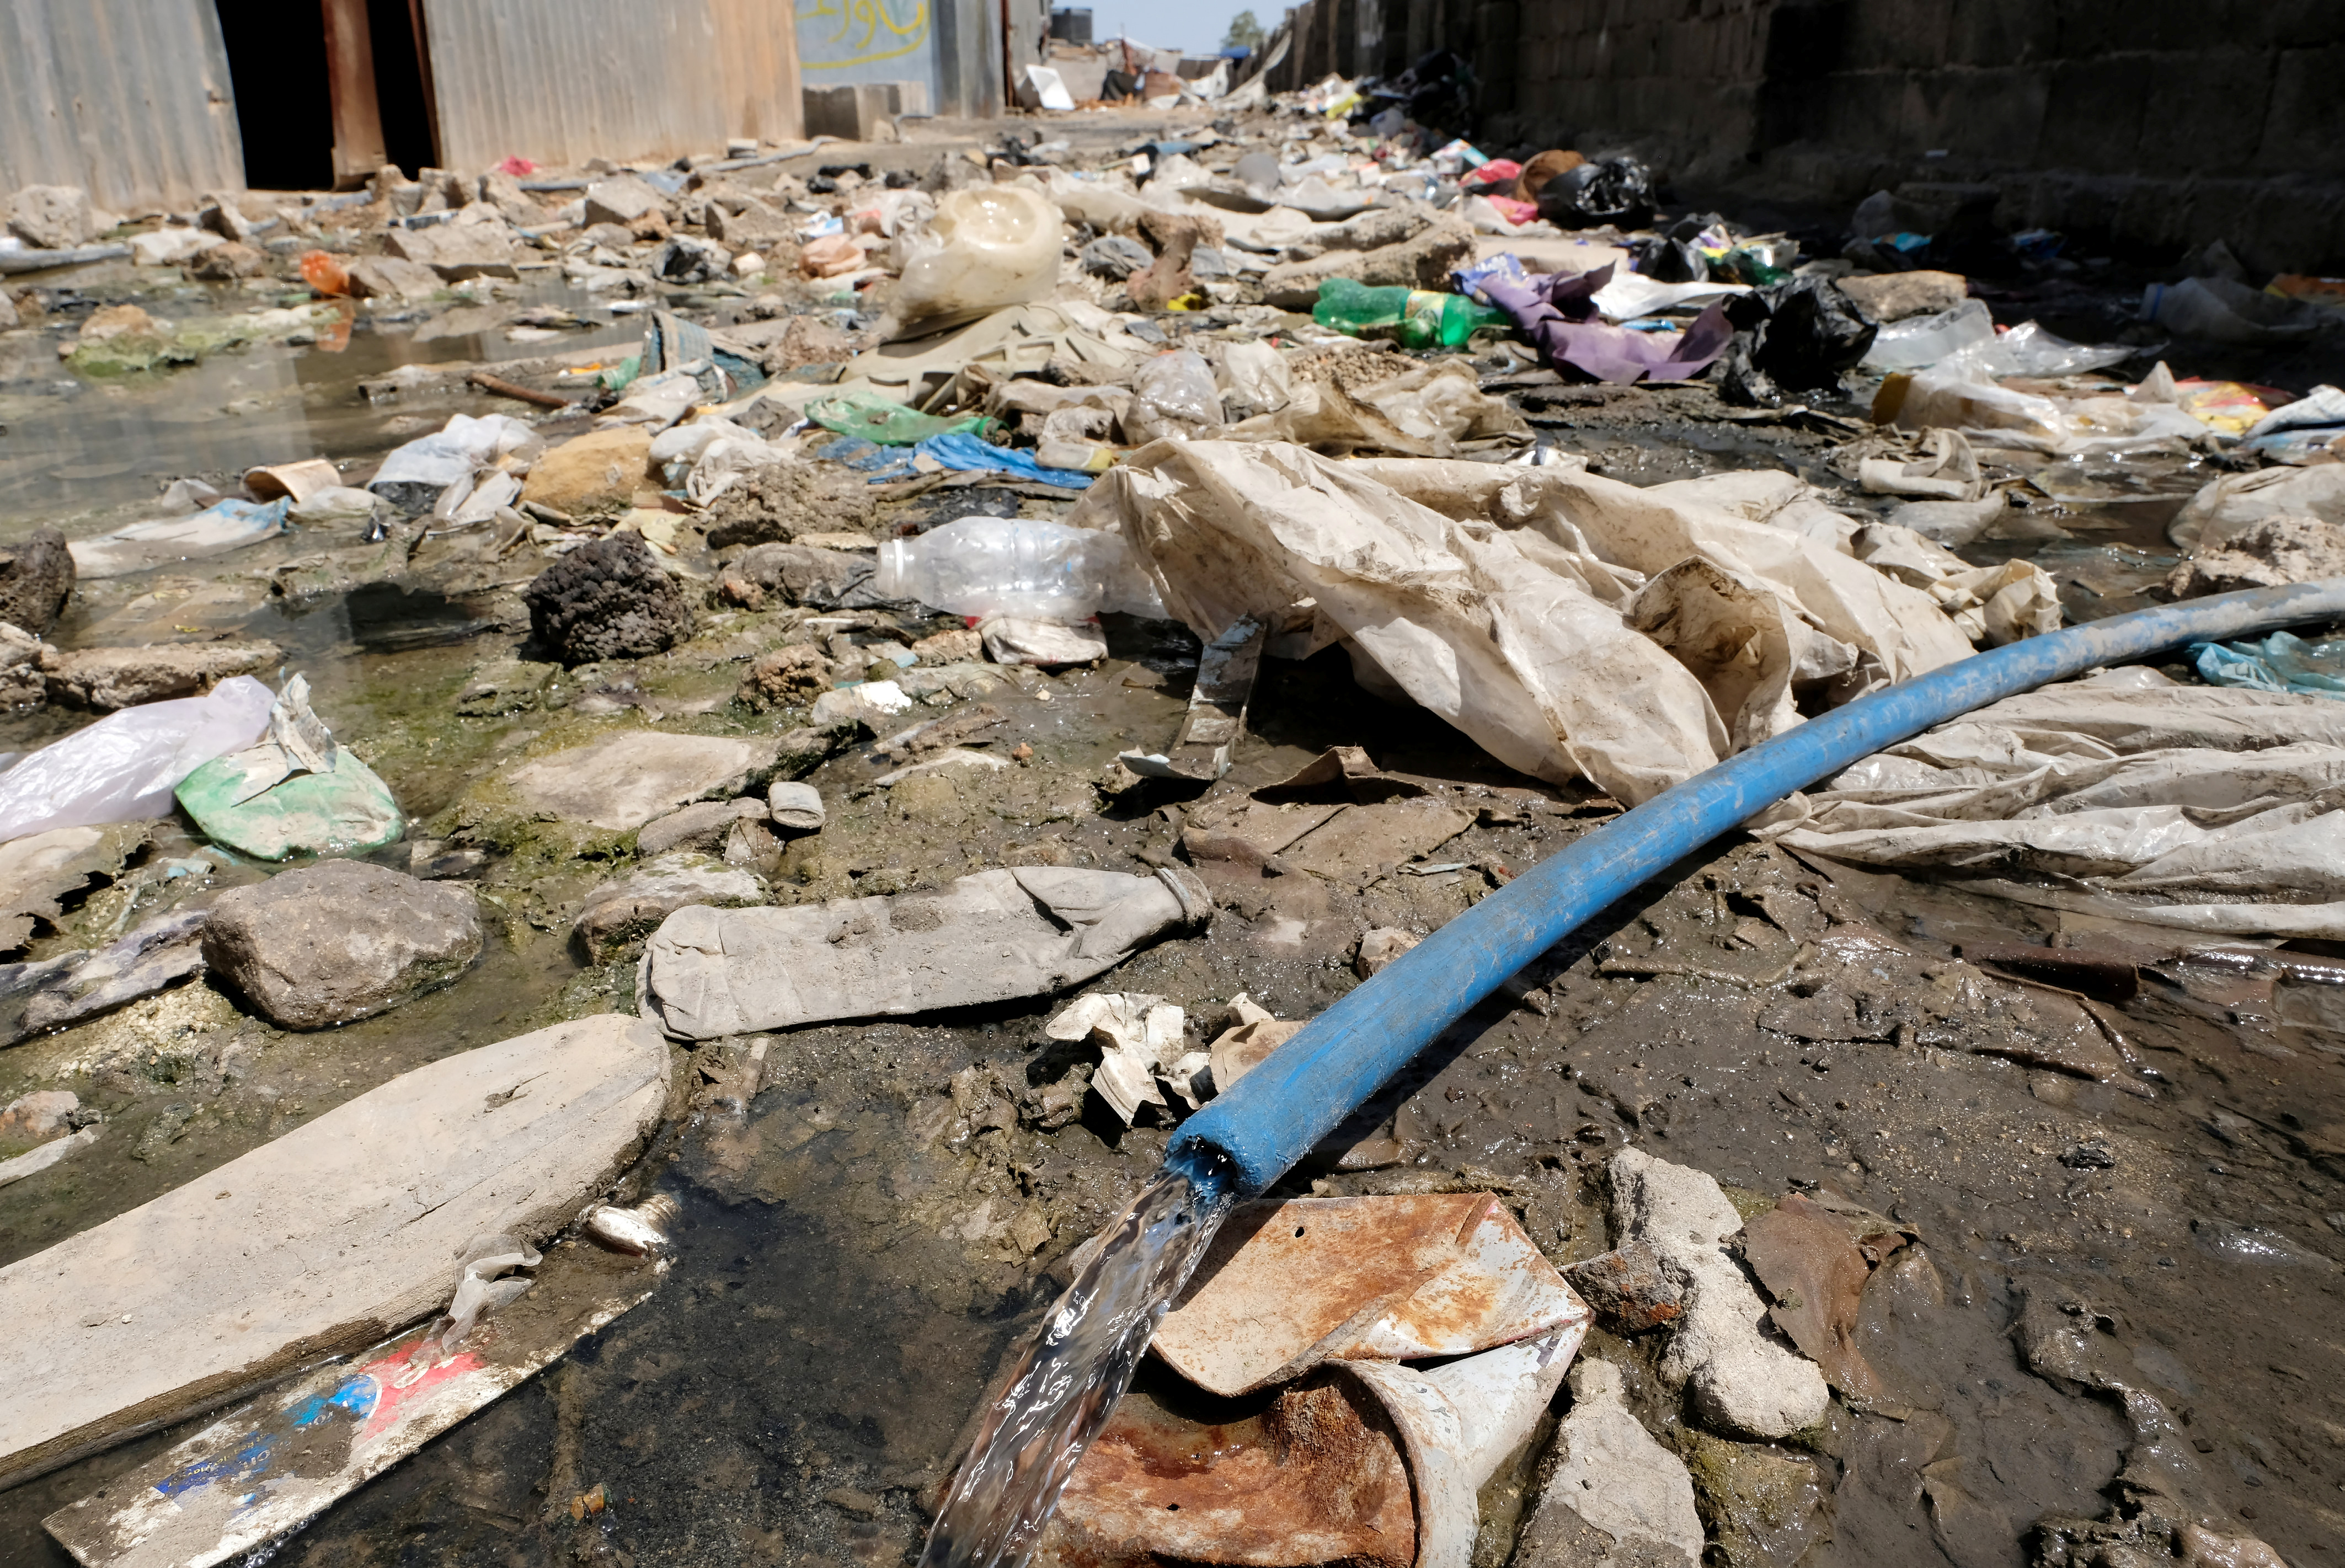 Ρώμη: Πνίγουν τα σκουπίδια την Αιώνια Πόλη – Κίνδυνος για την υγεία των κατοίκων